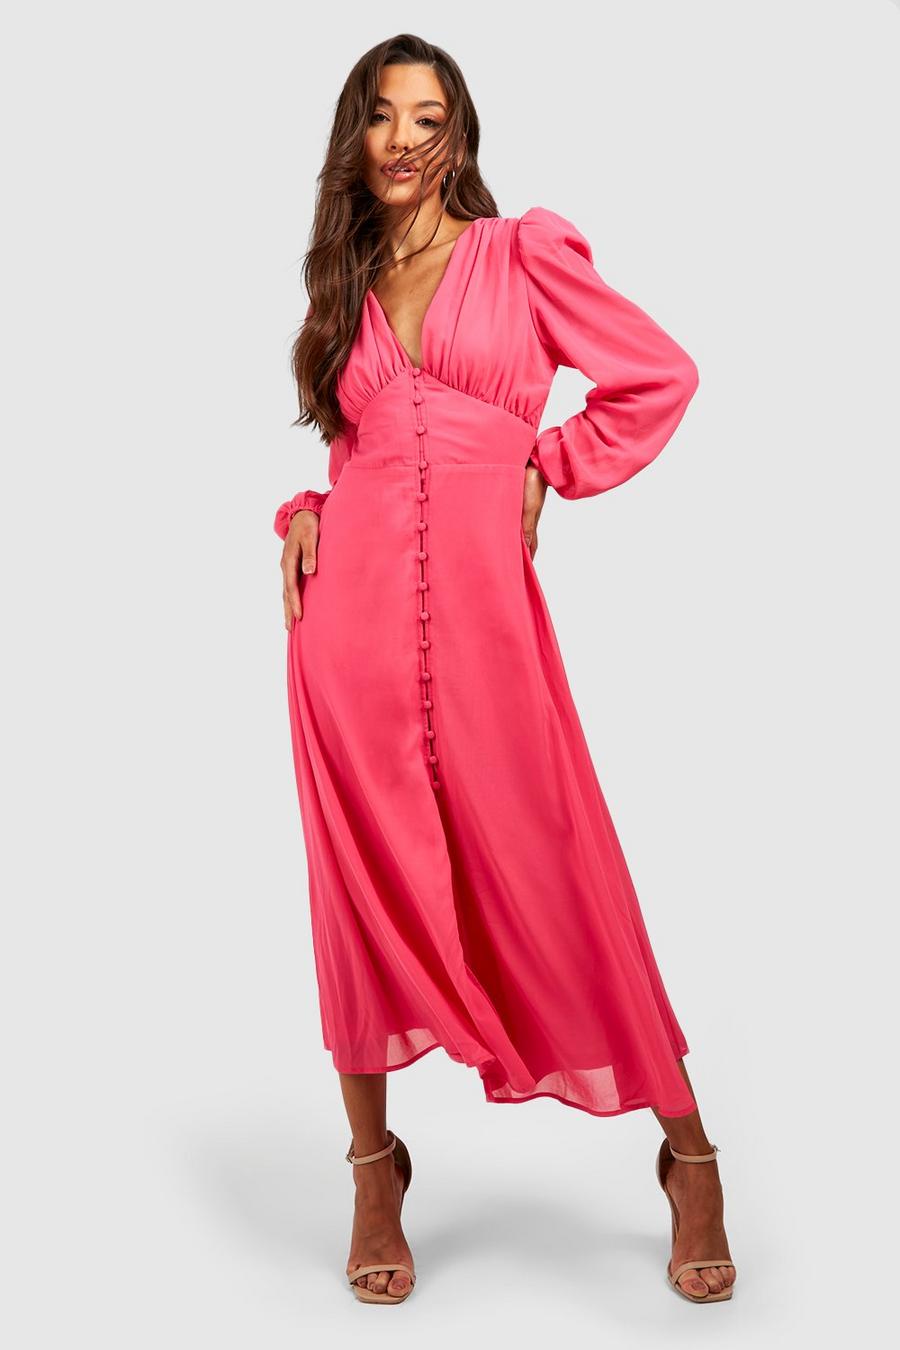 Pink Midiklänning med puffärm och knappar